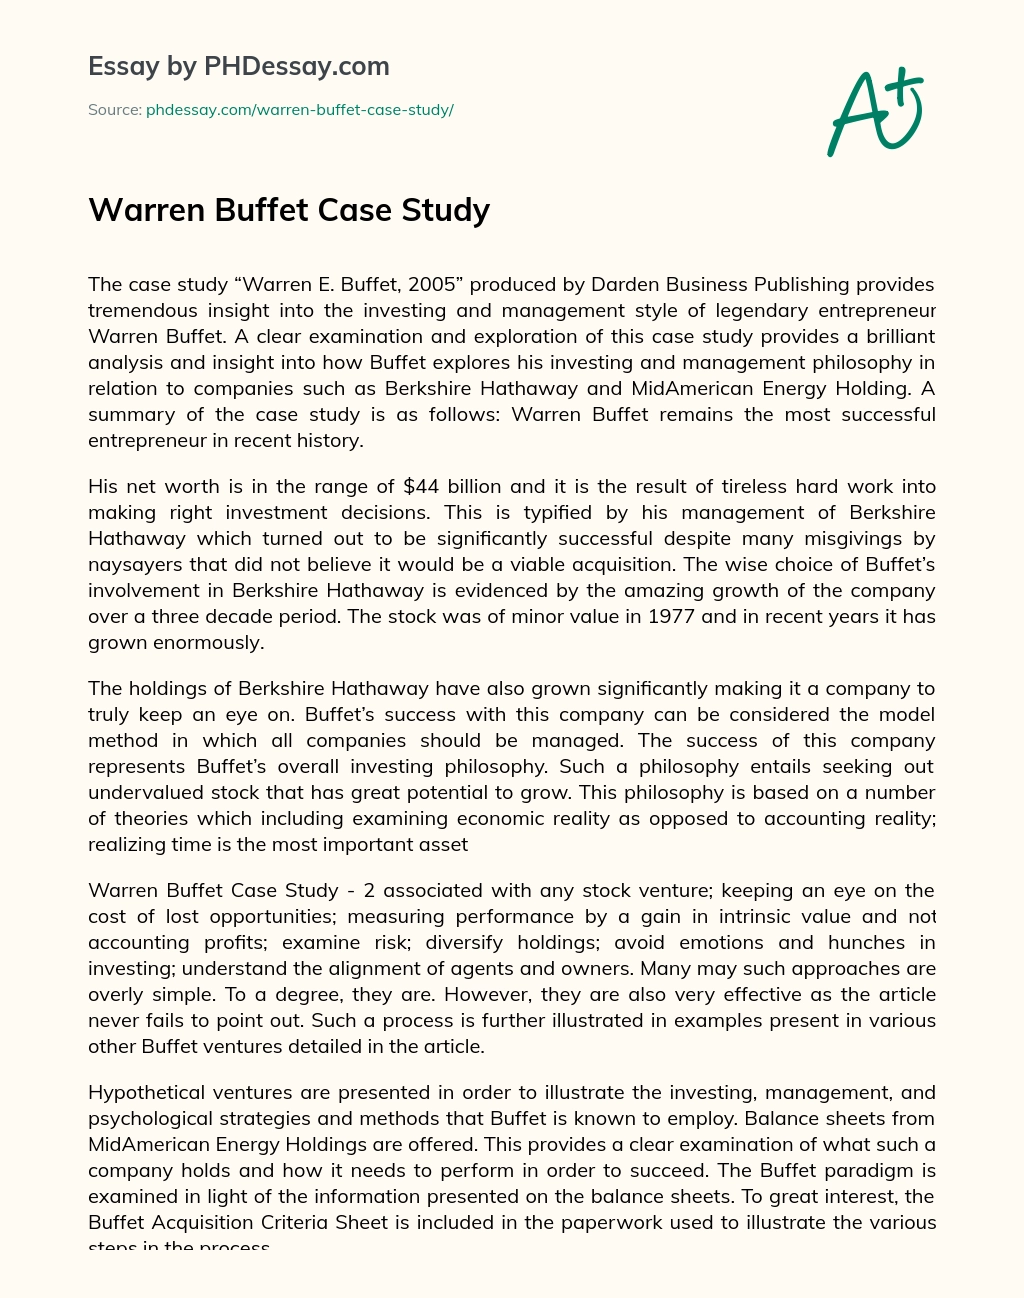 Warren Buffet Case Study essay